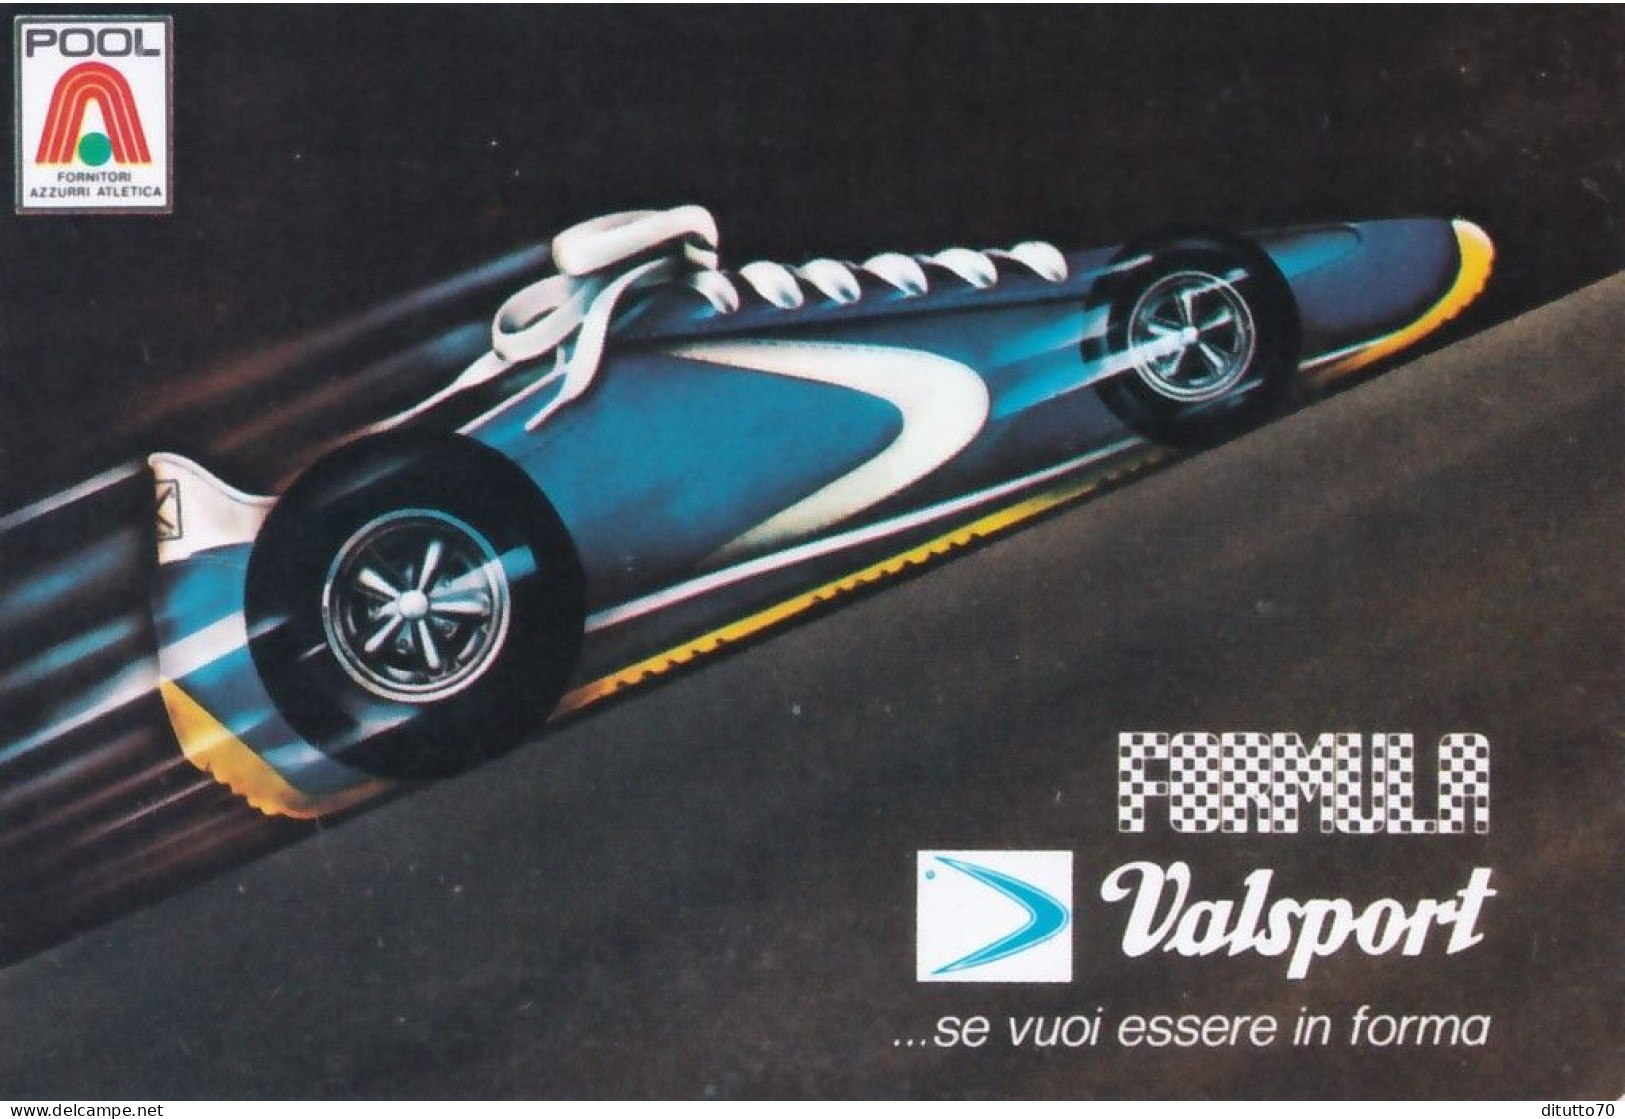 Calendarietto - Valsport - Anno 1977 - Petit Format : 1971-80